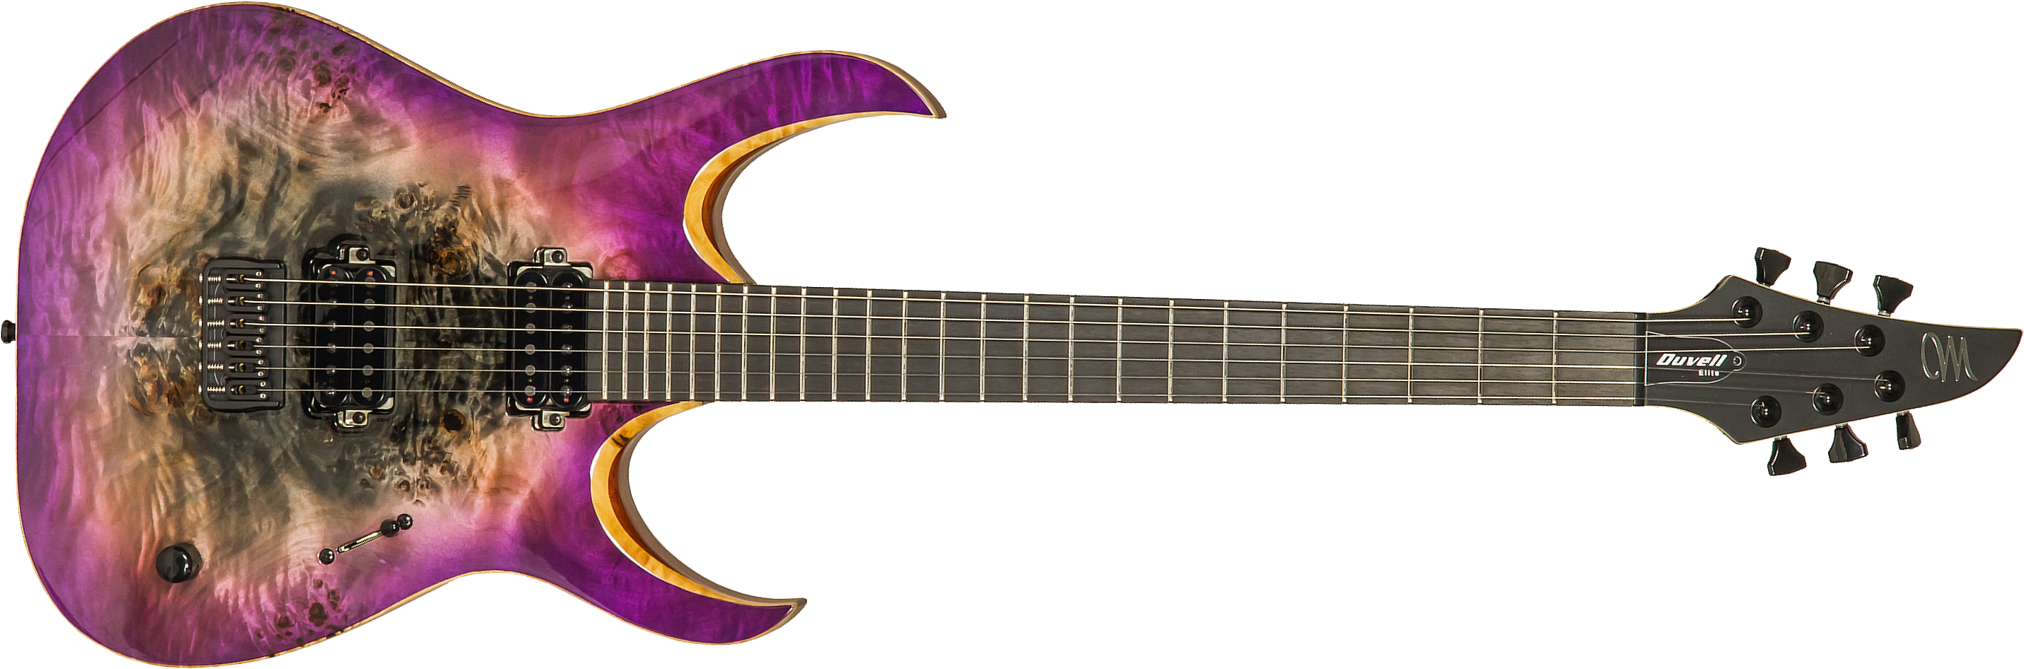 Mayones Guitars Duvell Elite 6 Hh Seymour Duncan Ht Eb #df2105470 - Supernova Purple - Guitare Électrique MÉtal - Main picture